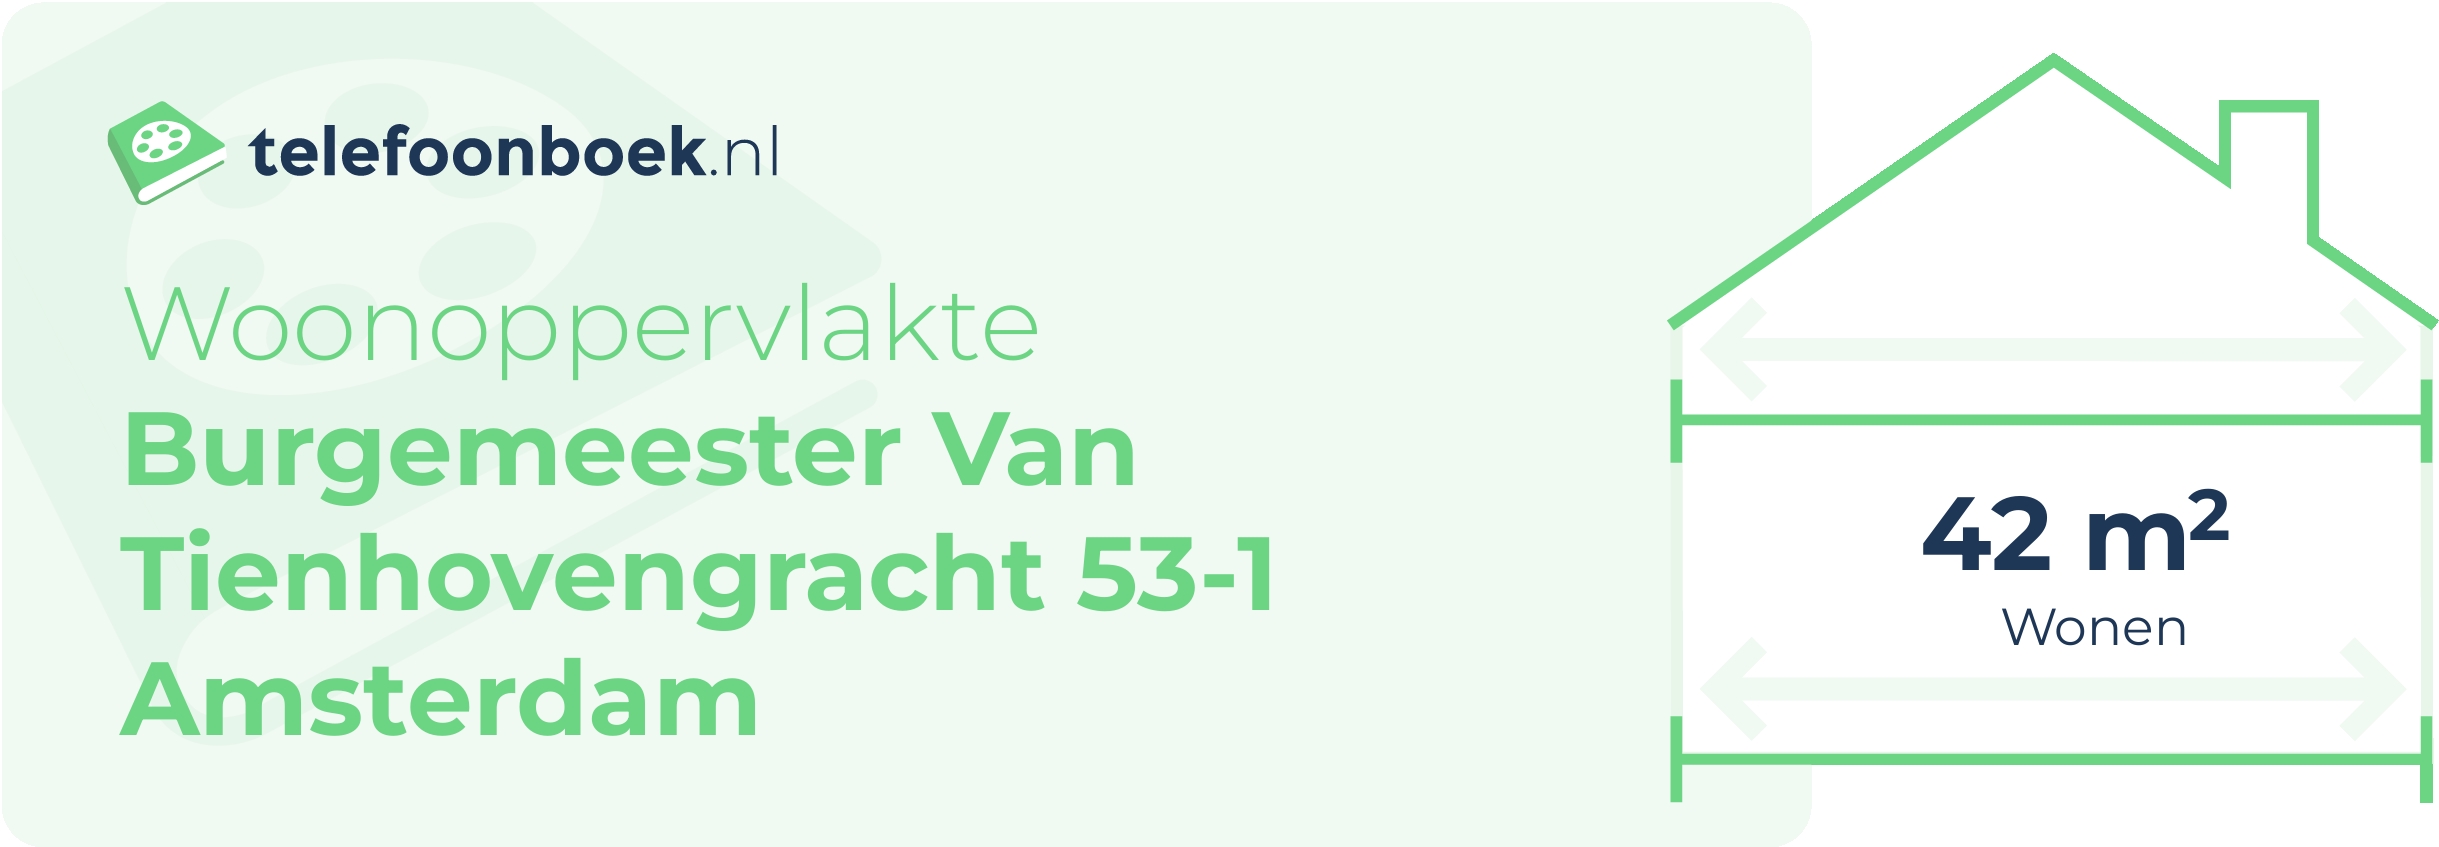 Woonoppervlakte Burgemeester Van Tienhovengracht 53-1 Amsterdam